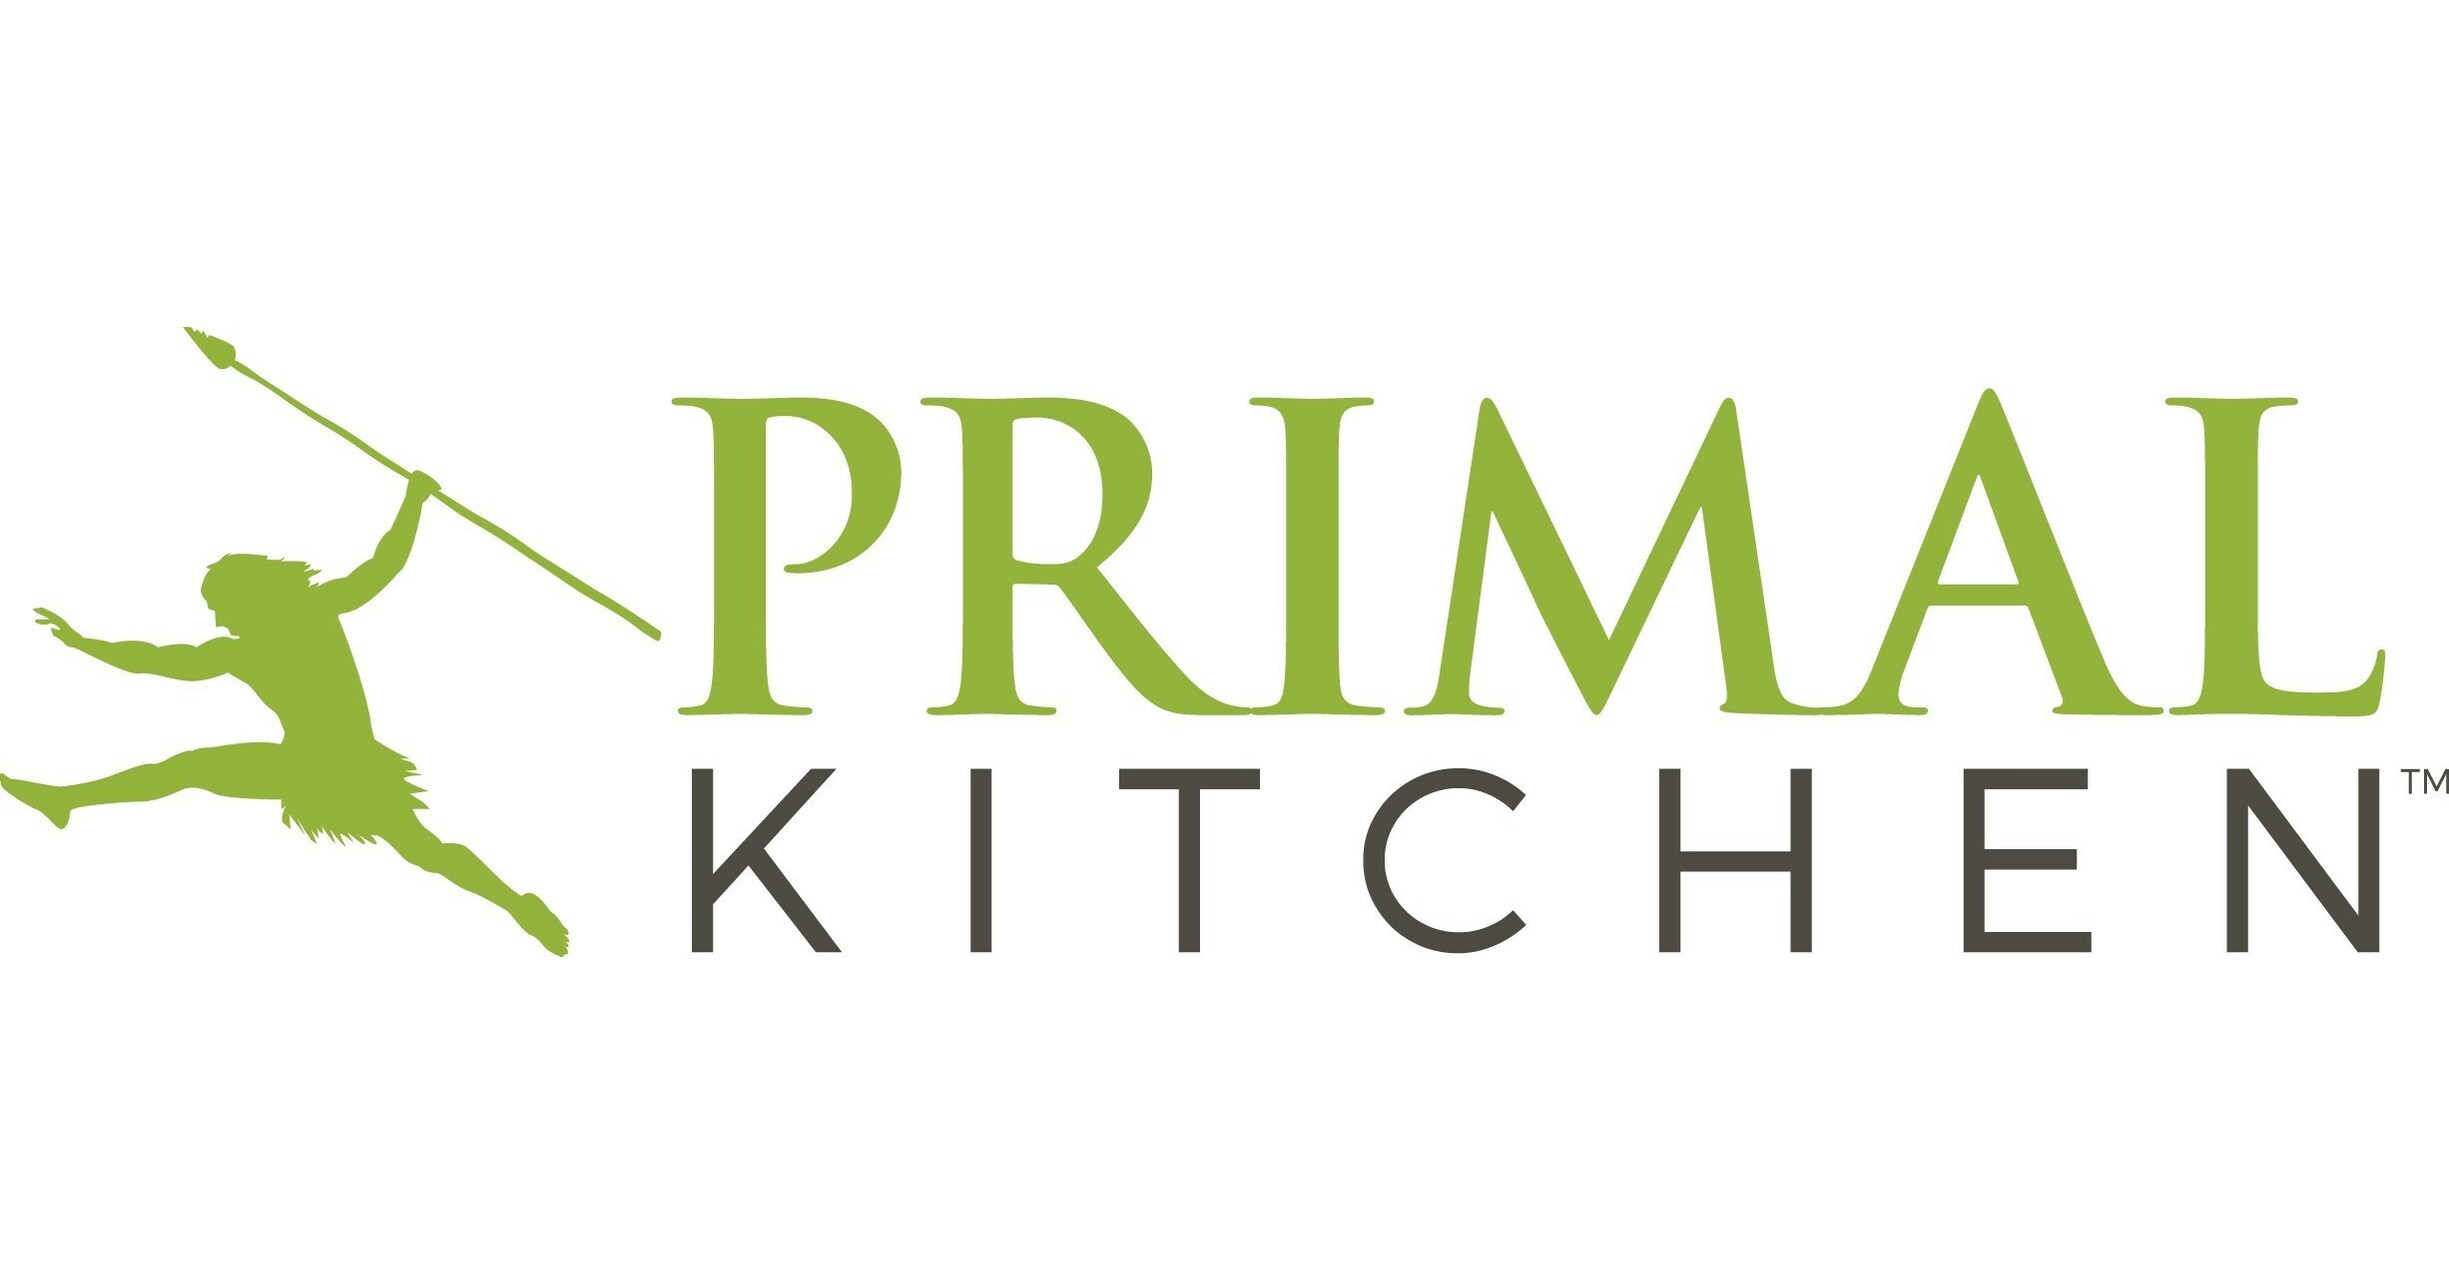 https://mma.prnewswire.com/media/2051786/Primal_Kitchen_Logo.jpg?p=facebook